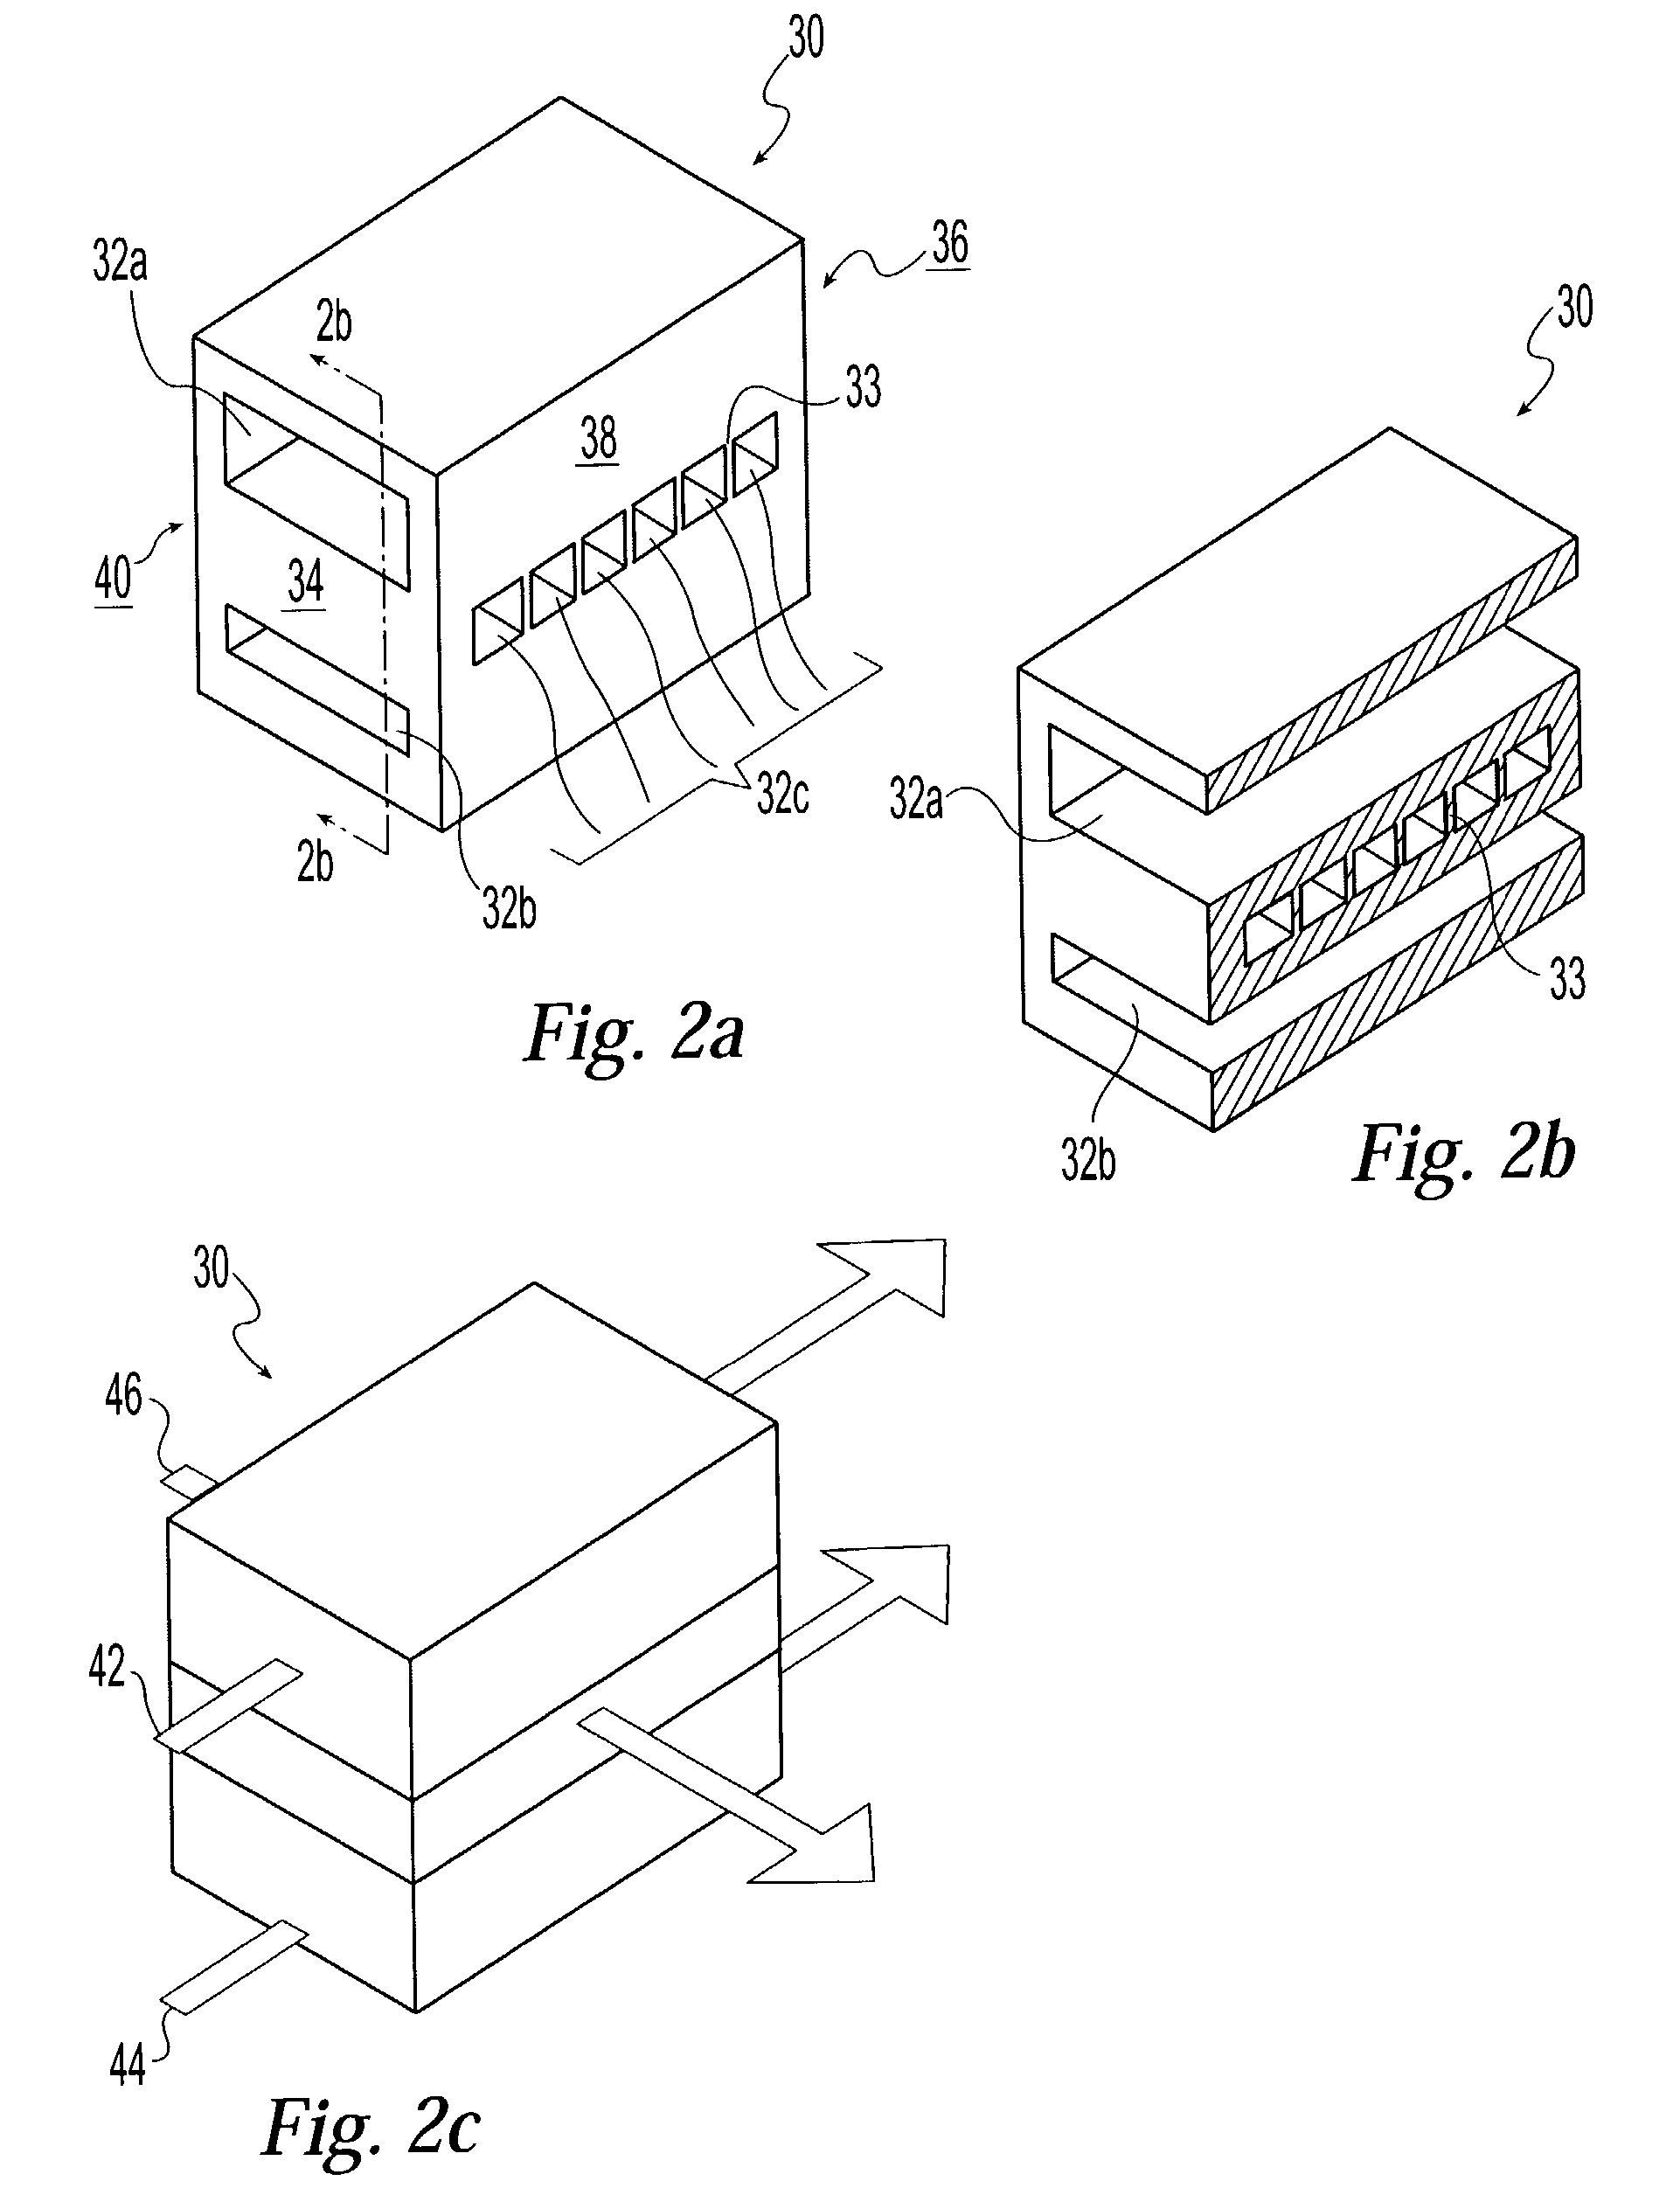 Multi-stream microchannel device